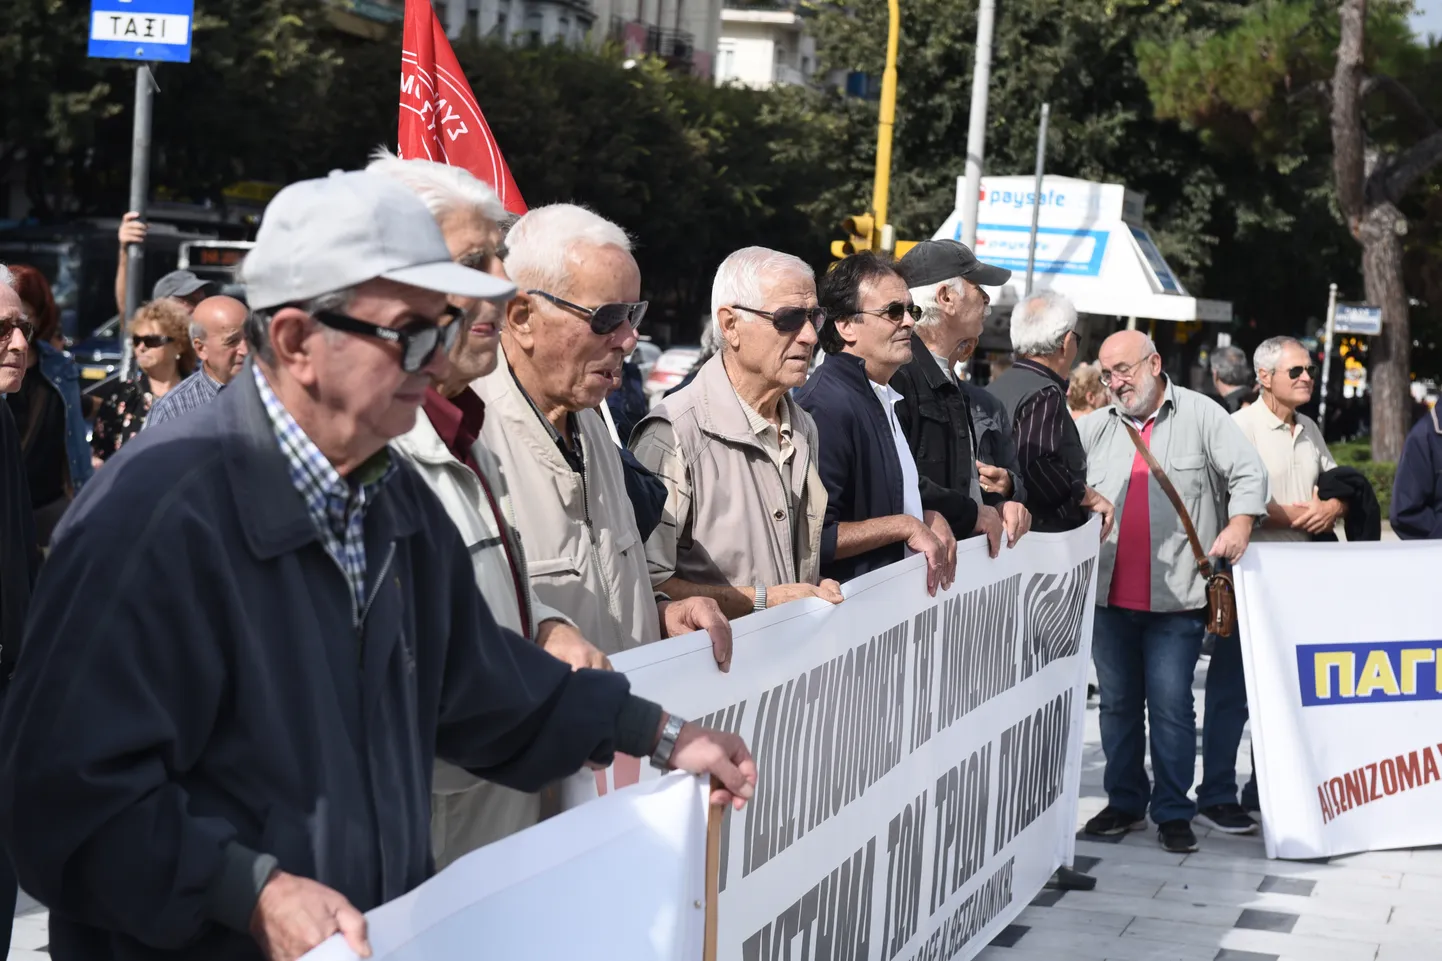 Kreeka majandusel läheb hästi ja pensionärid nõuavad pensionitõusu. Sajad pensionärid nõudisid täna pensionitõusu Thessalonikis.